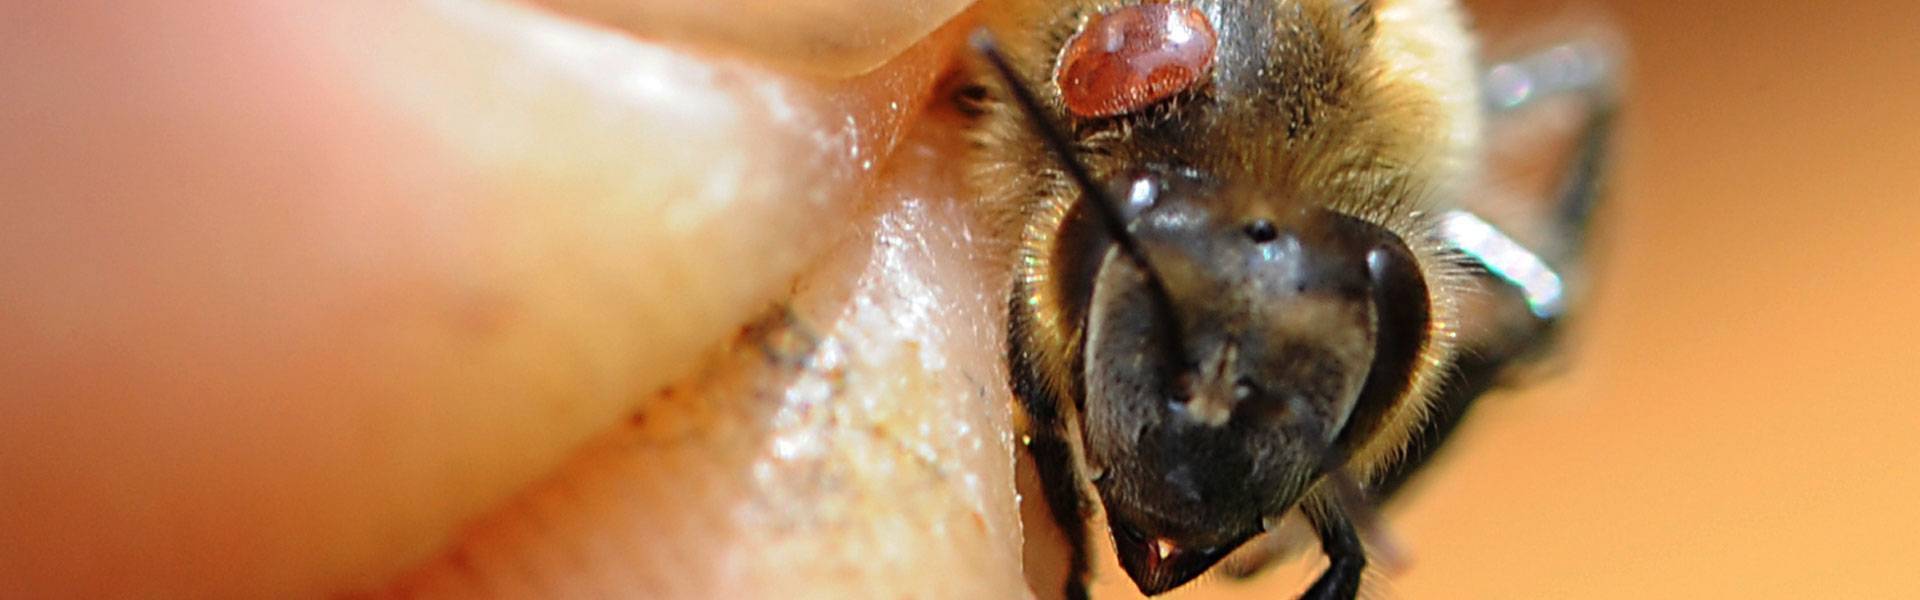 Опасная но излечимая болезнь пчел — акарапидоз